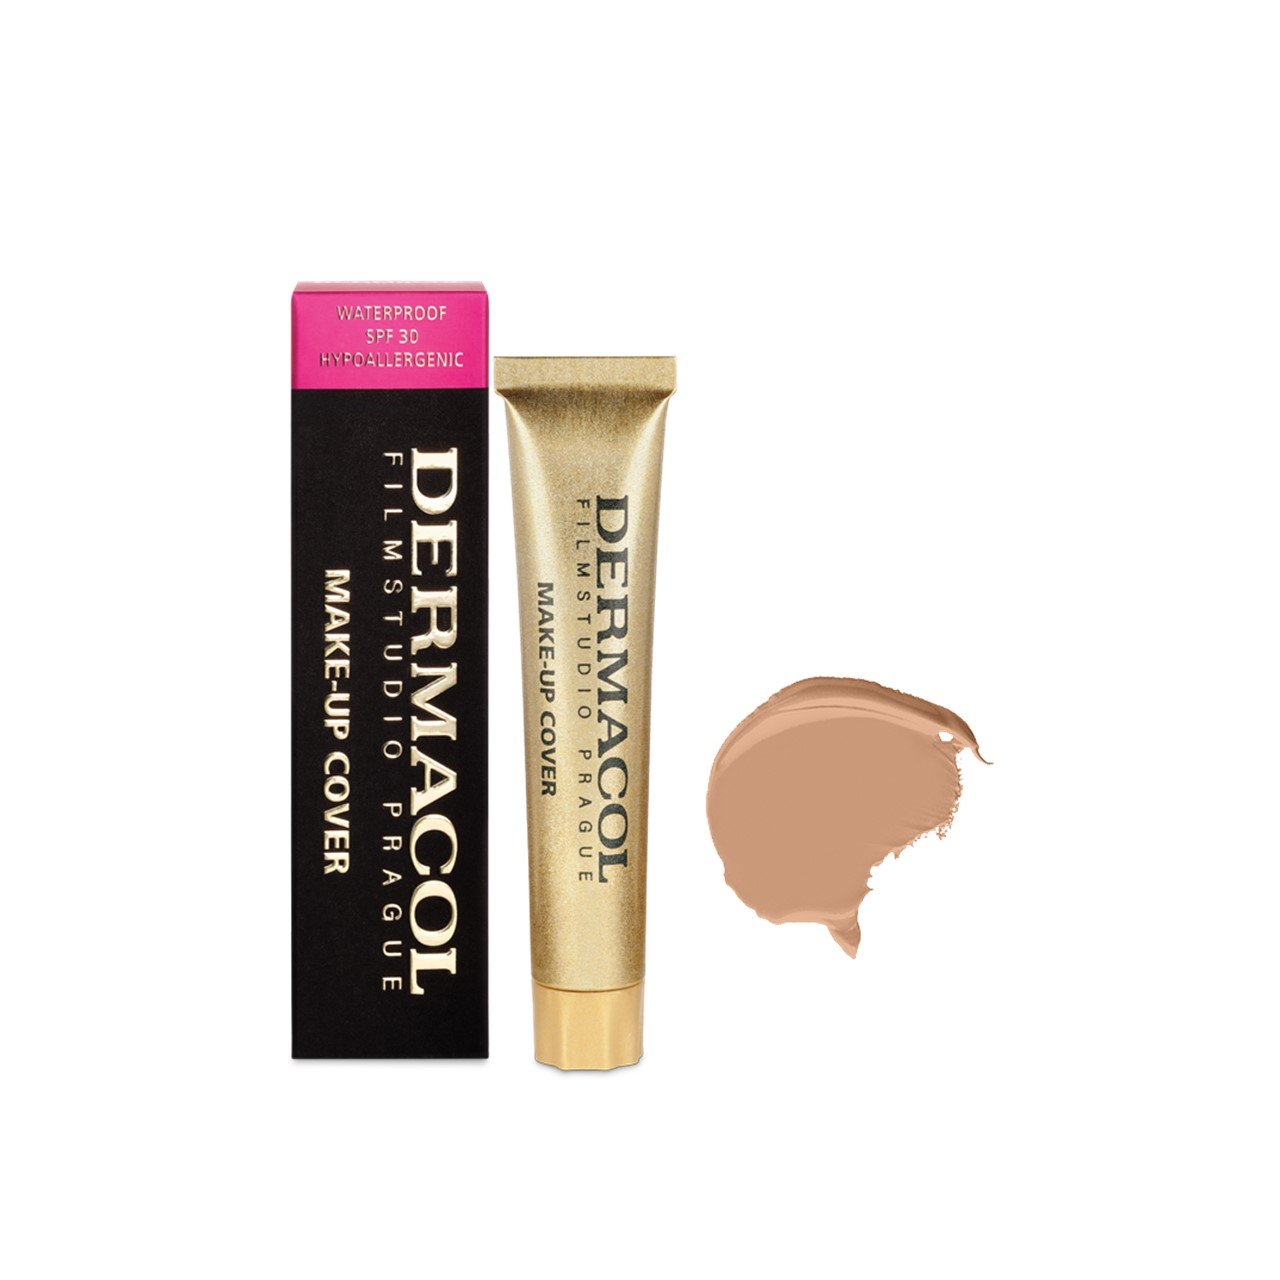 Dermacol Make-Up Cover Foundation SPF30 221 30g (1.06oz)